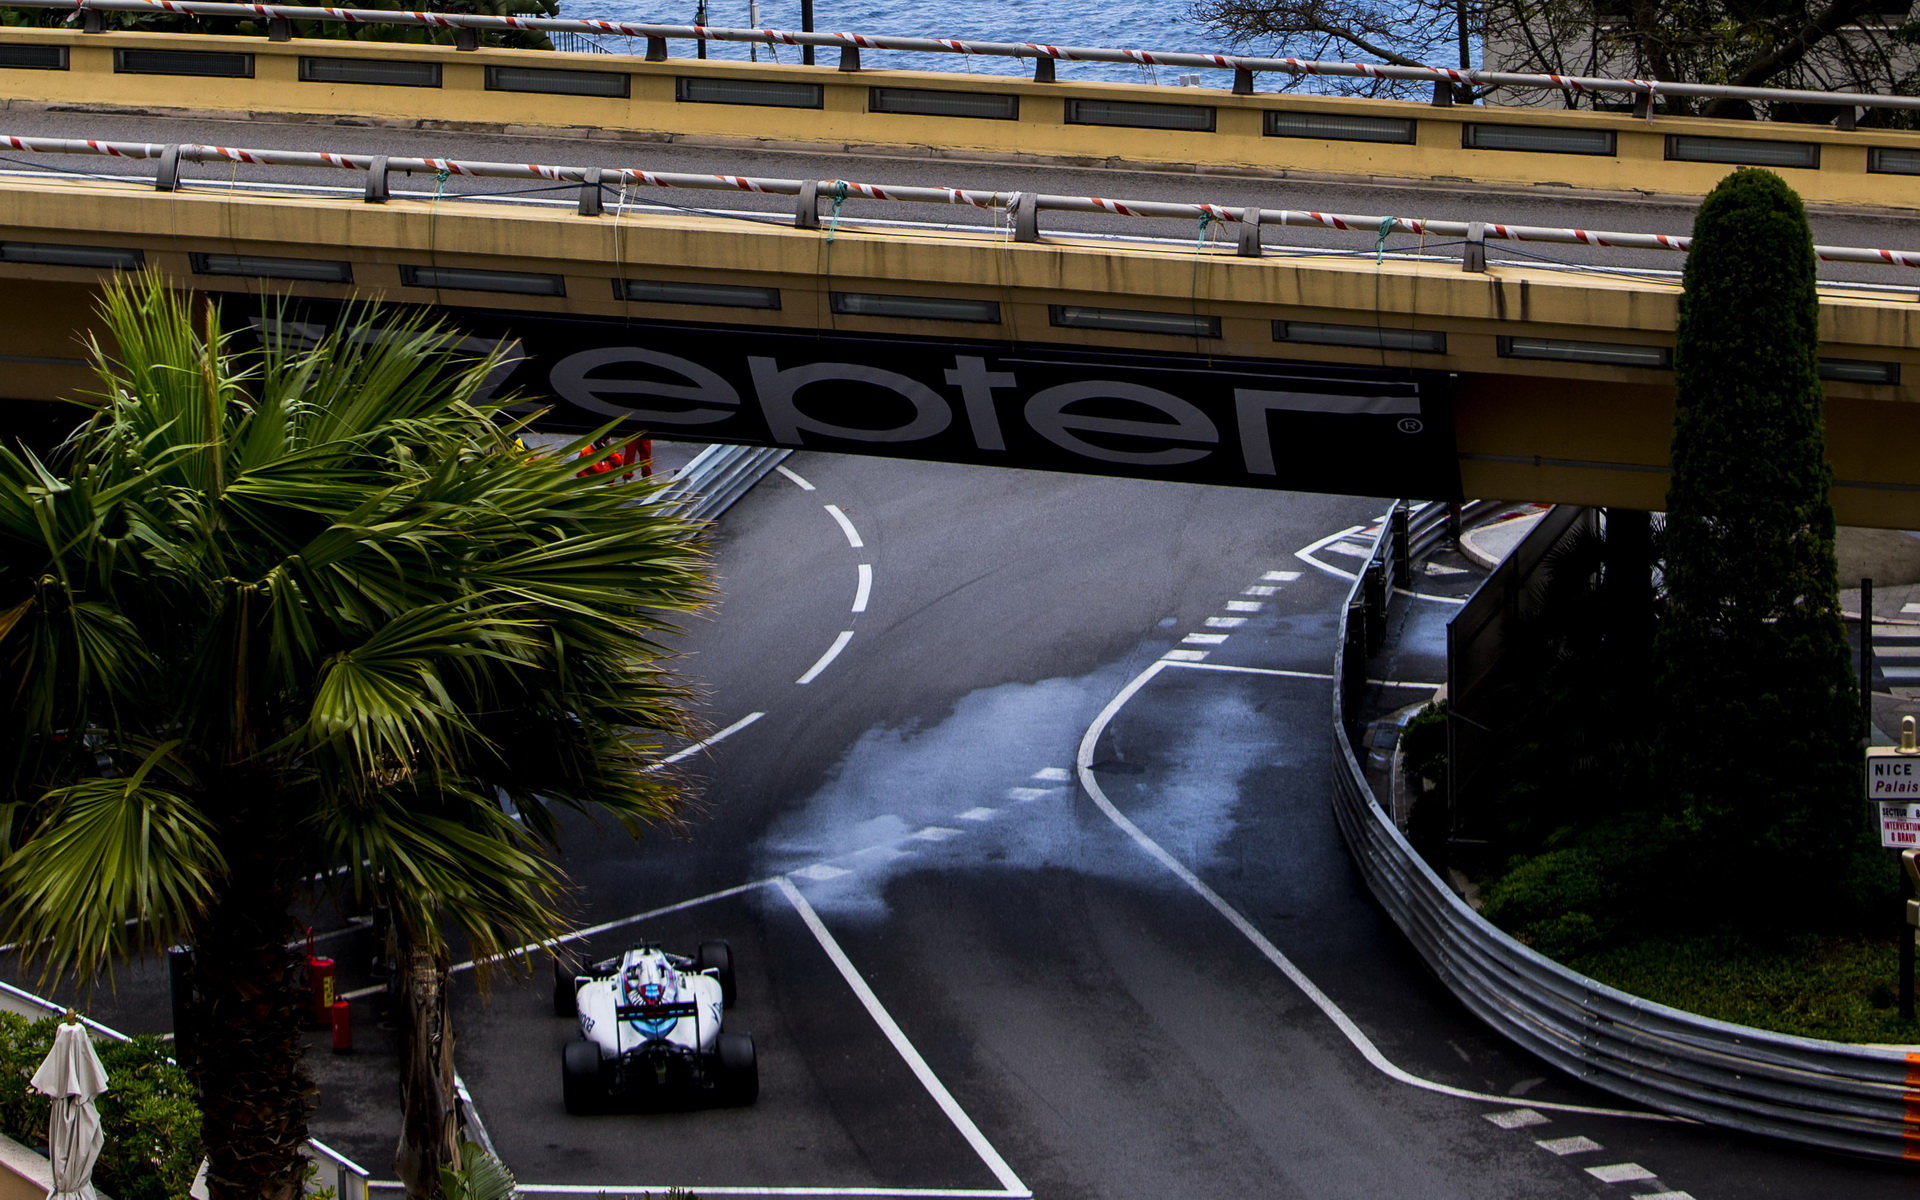 Felipe Massa v závodě v Monaku